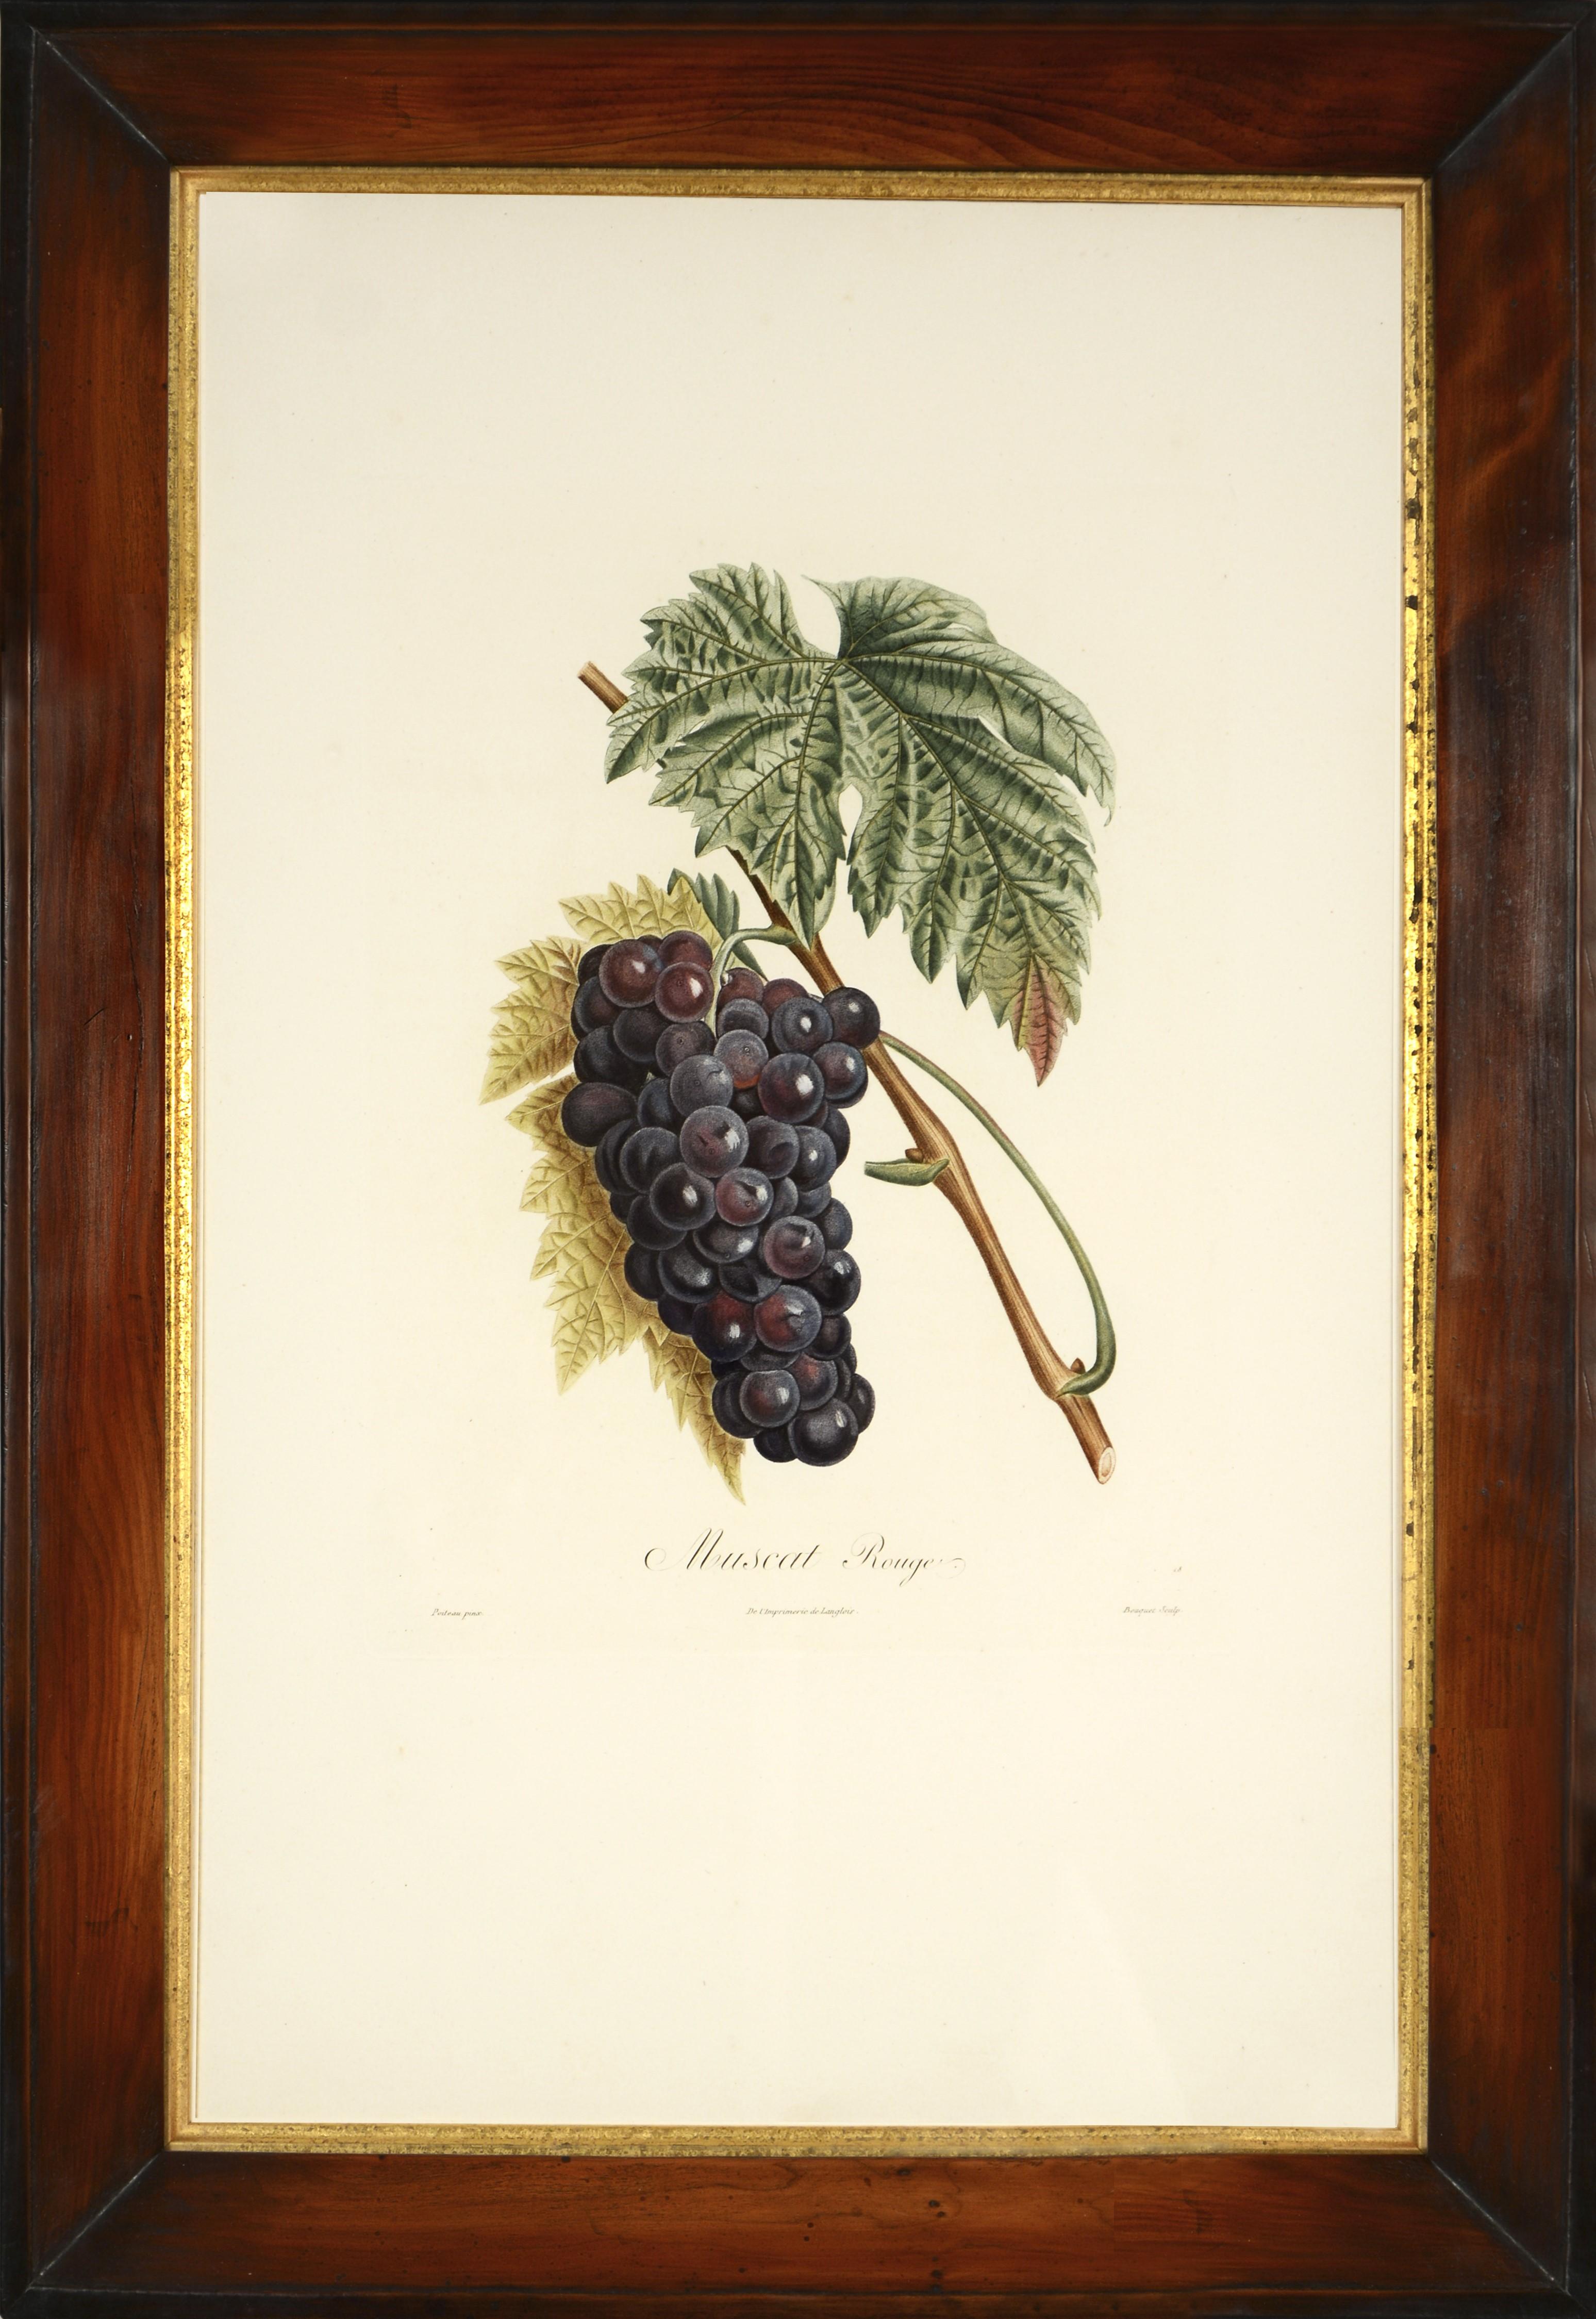 POITEAU/TURPIN. Traité des arbres fruitiers: A Set of Four Grapes. - Naturalistic Print by Poiteau, A & Turpin, P